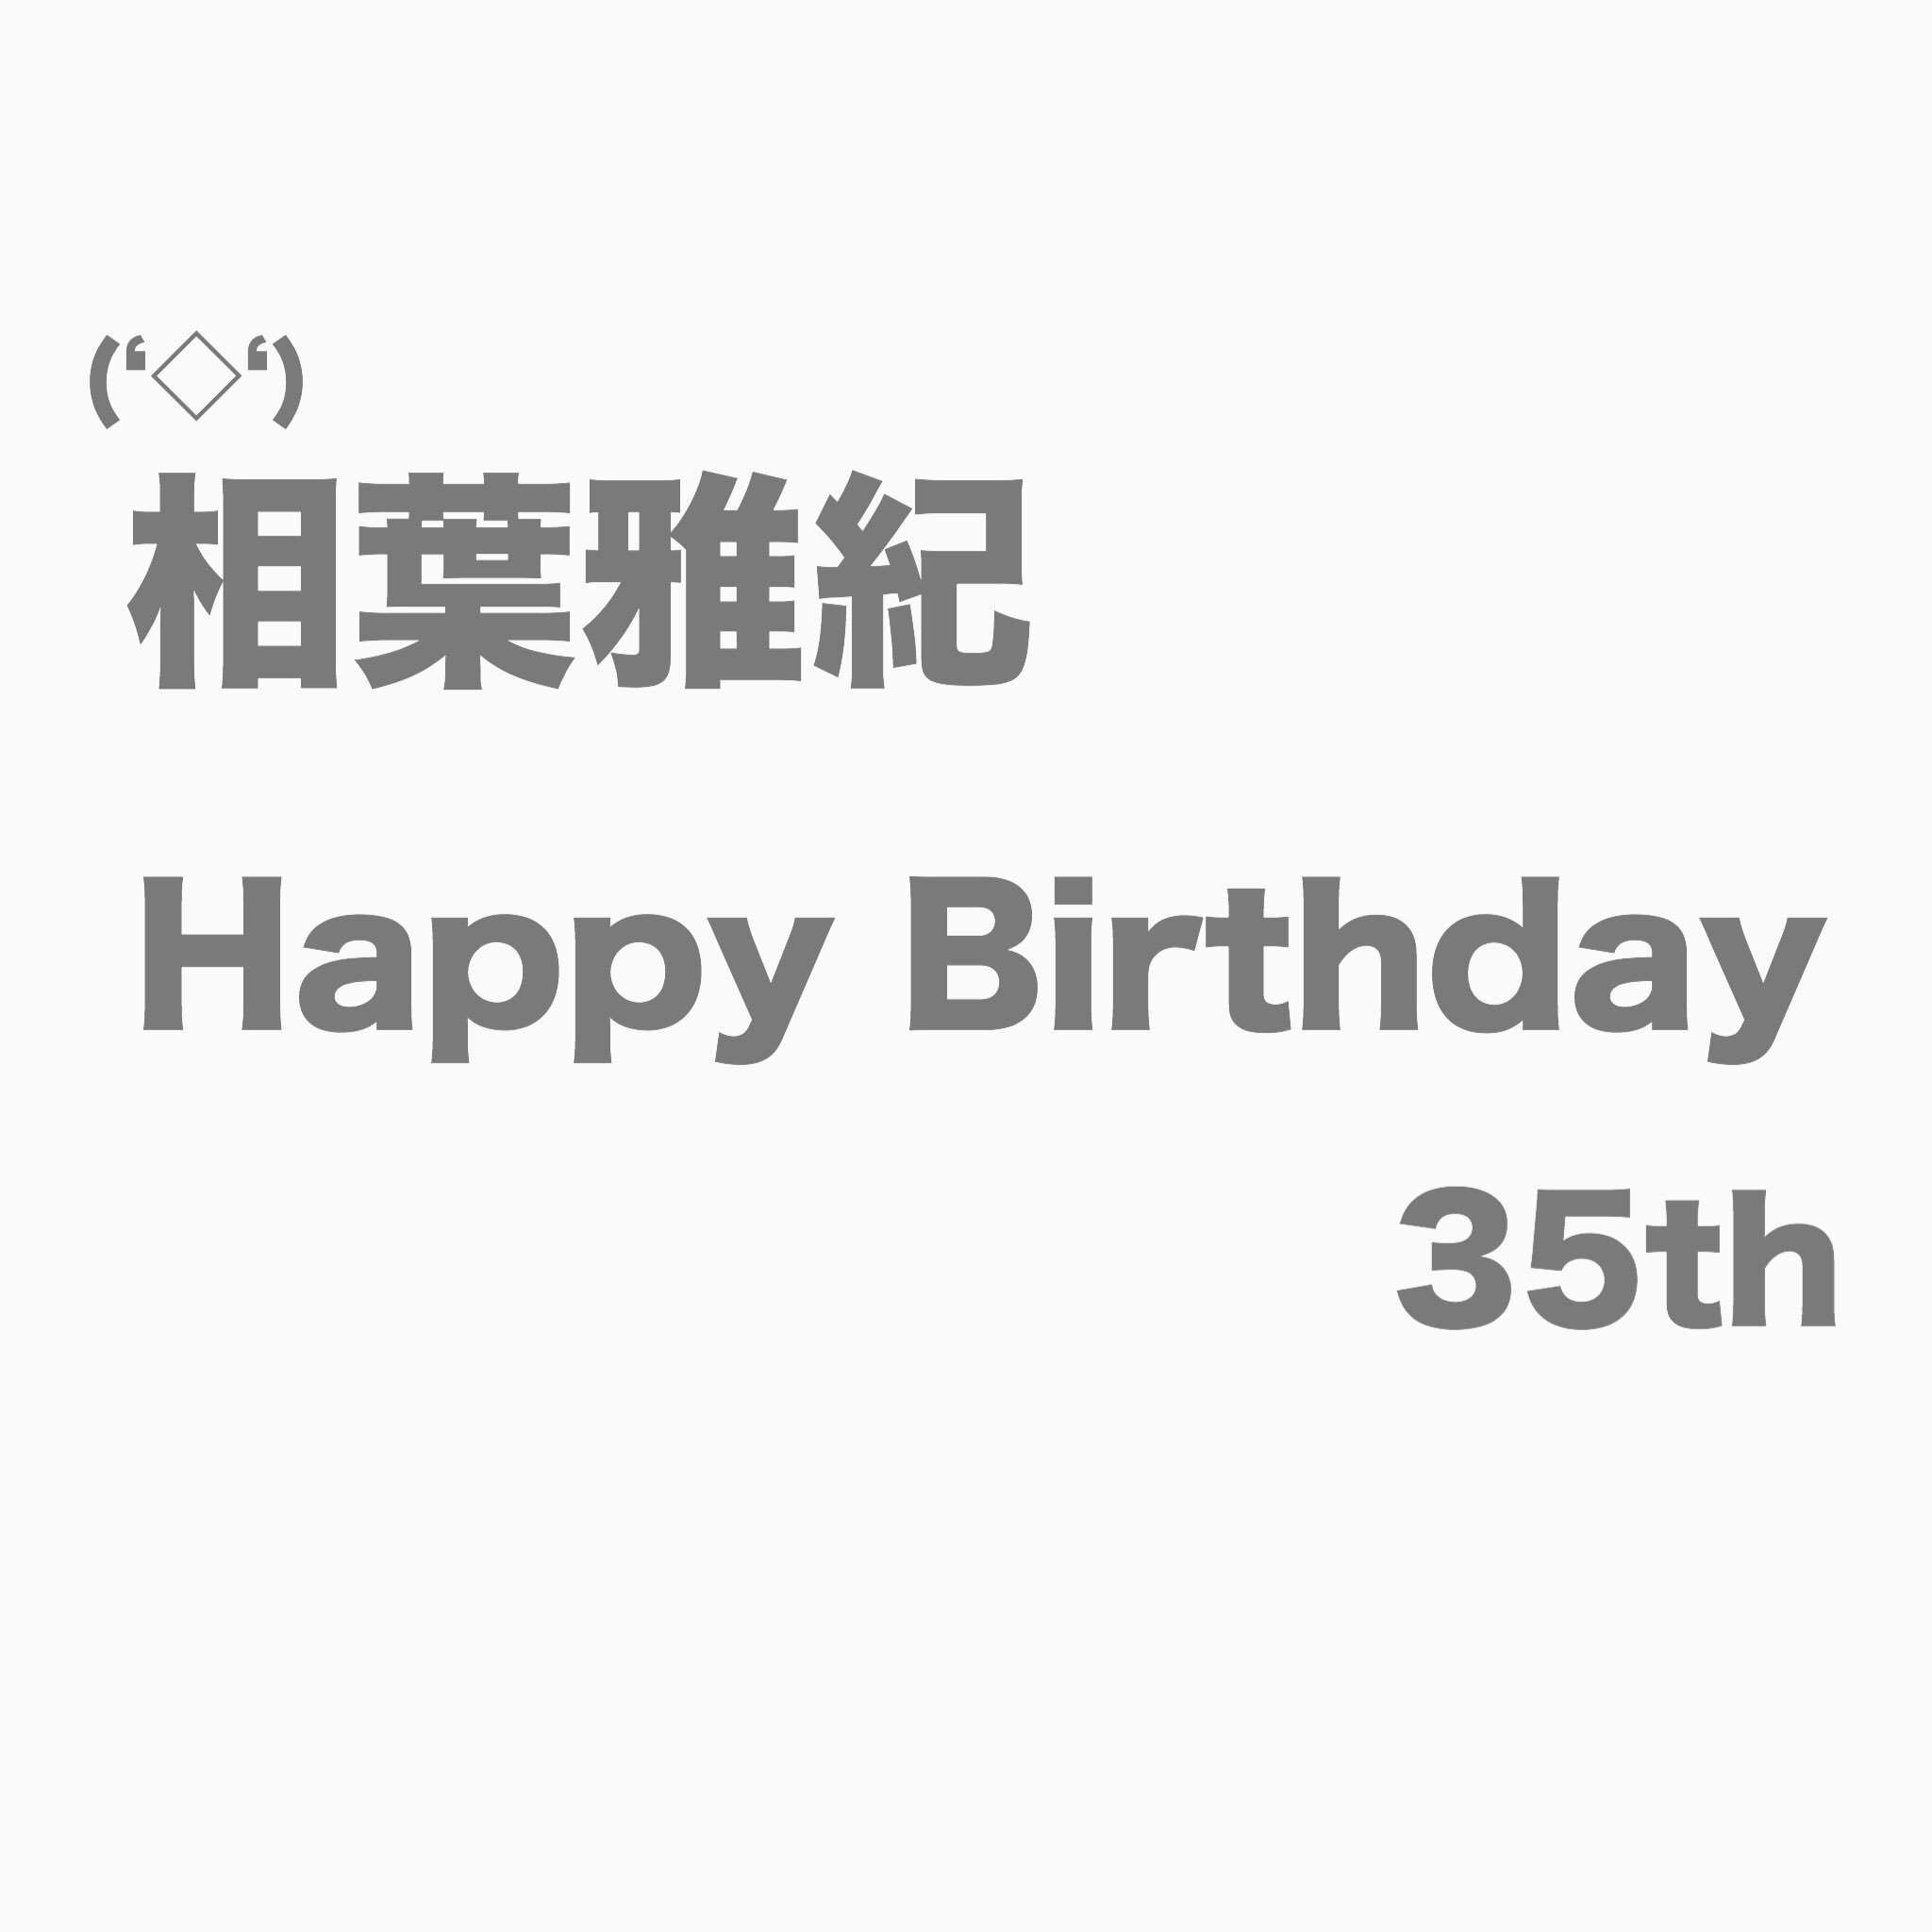  Masaki.Aiba Today is December 24 Happy Birthday 